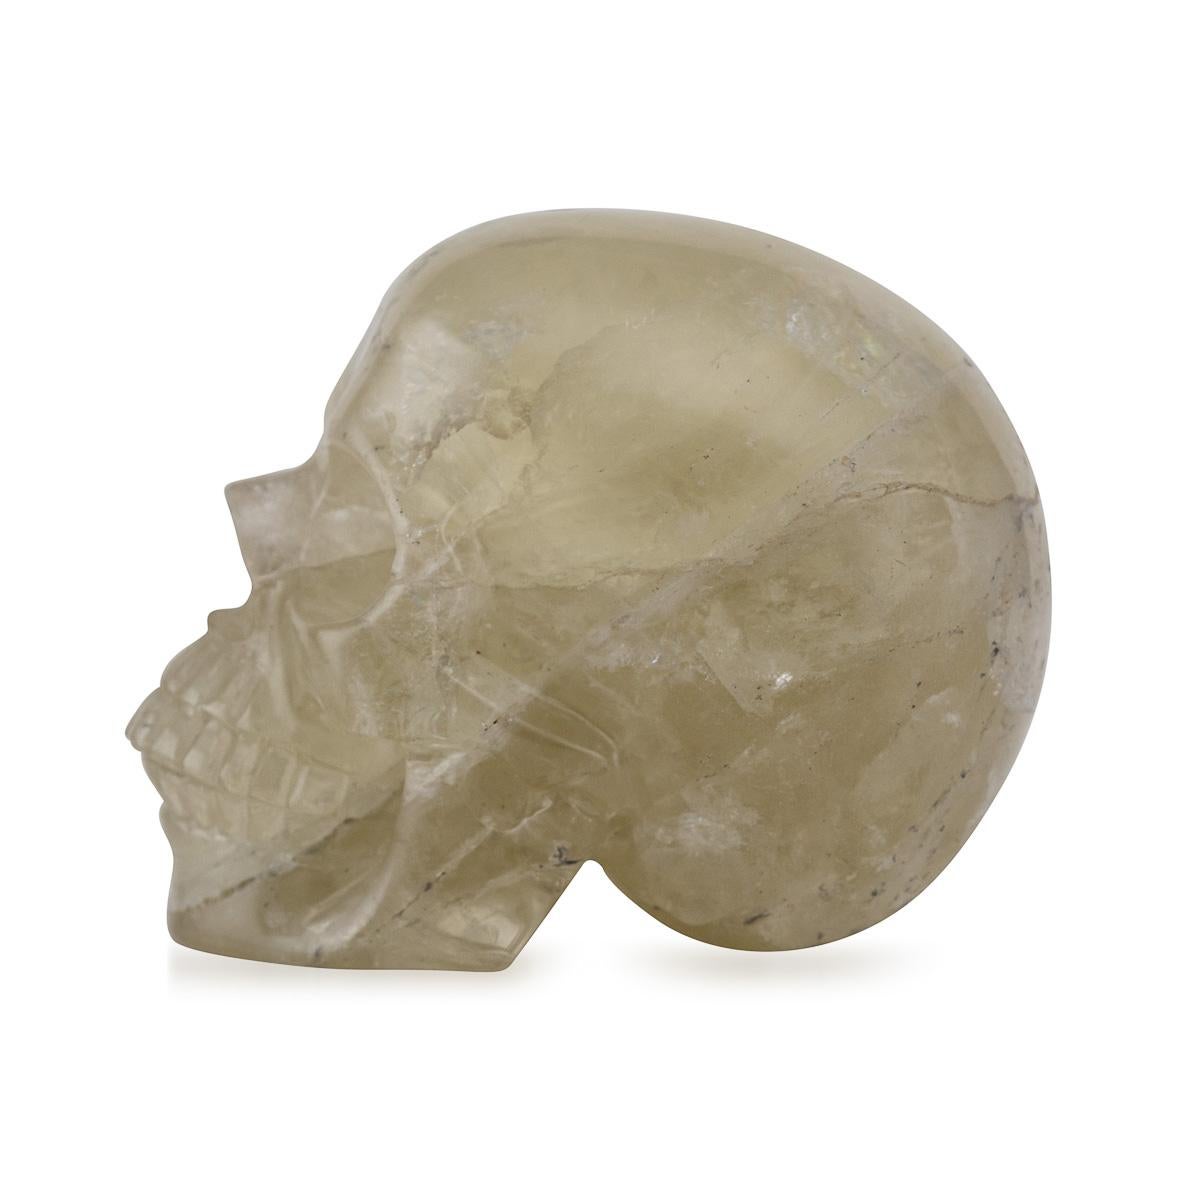 Crâne en cristal sculpté à la main au milieu du 20e siècle. Les crânes de cristal sont des artefacts intrigants et souvent mystifiants, fabriqués à partir de divers types de cristaux ou de pierres précieuses, notamment le quartz, l'améthyste, etc.